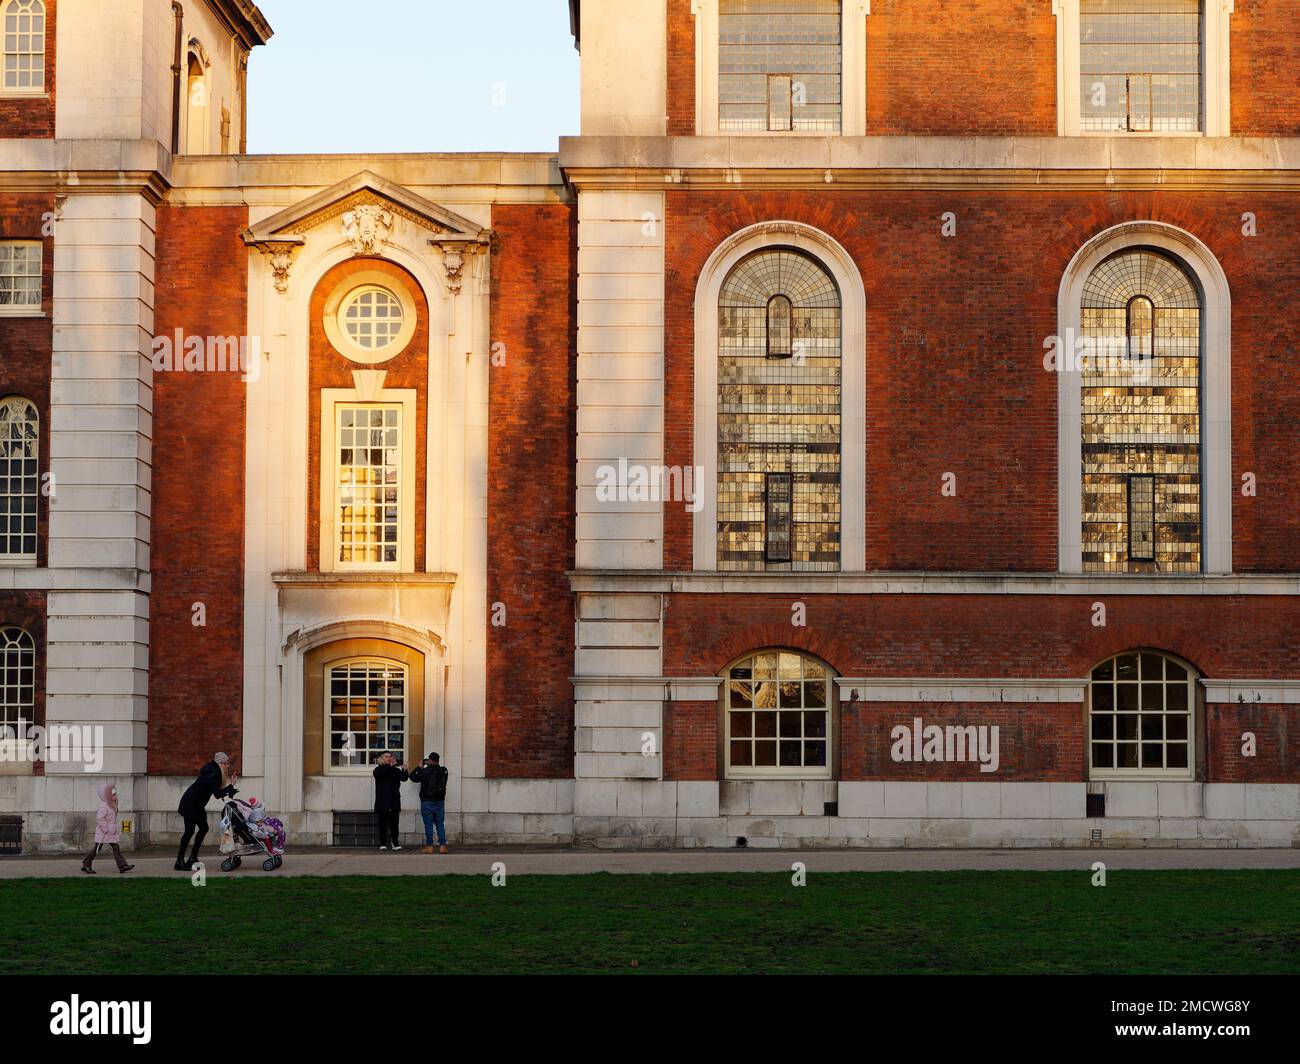 La mère pousse une poussette devant les bâtiments de l'université à Greenwich lors d'une journée d'hiver, car les belles fenêtres reflètent le soleil. Londres, Angleterre Banque D'Images